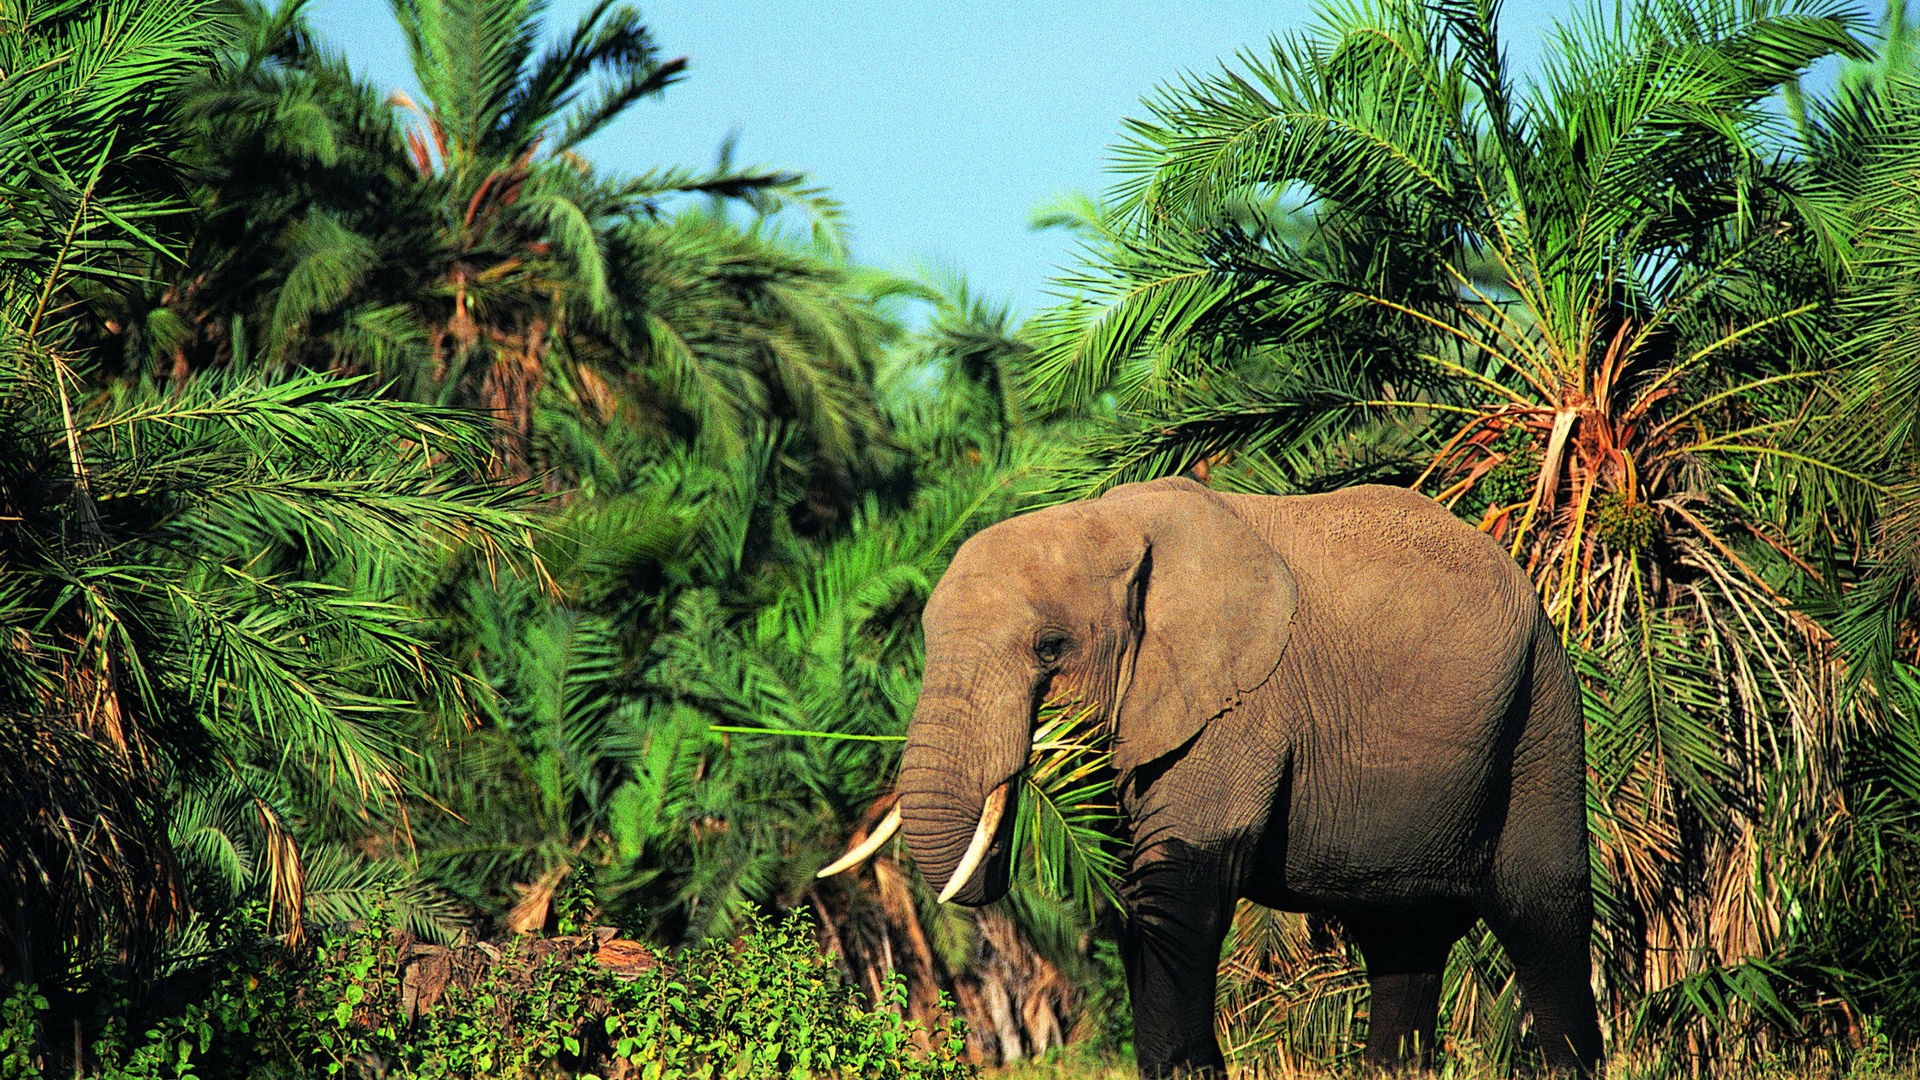 Image: Elephant, large, trunk, herbivore, plant, palma